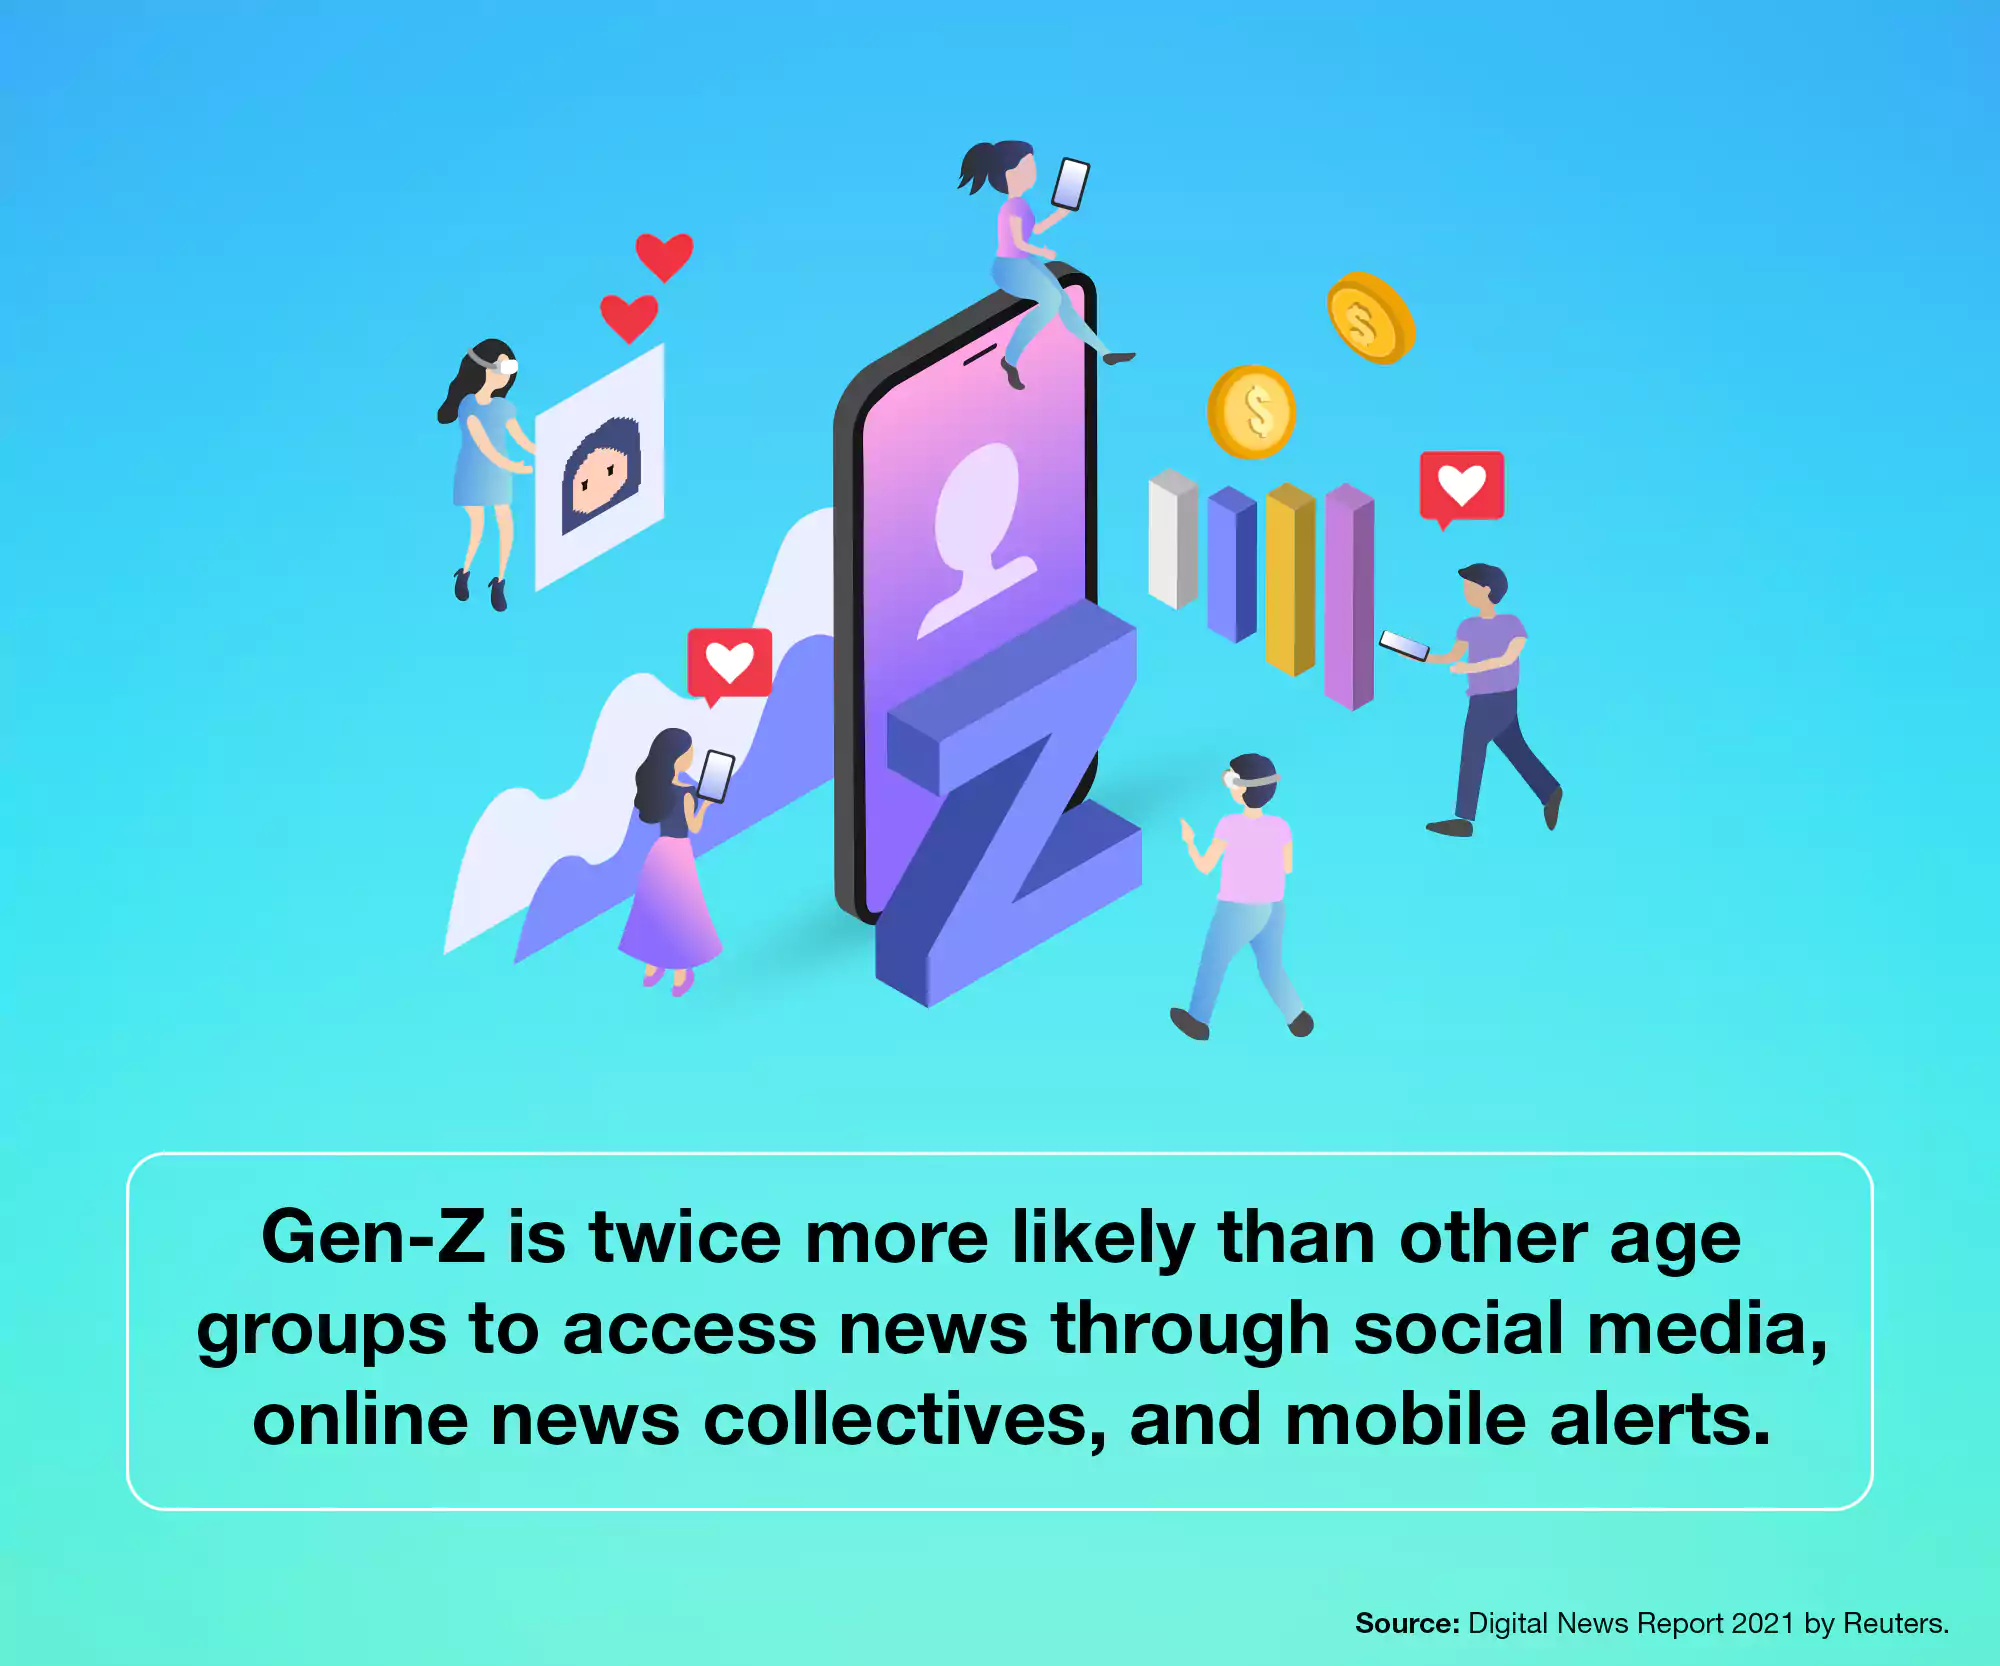 Gen Z's news consumption